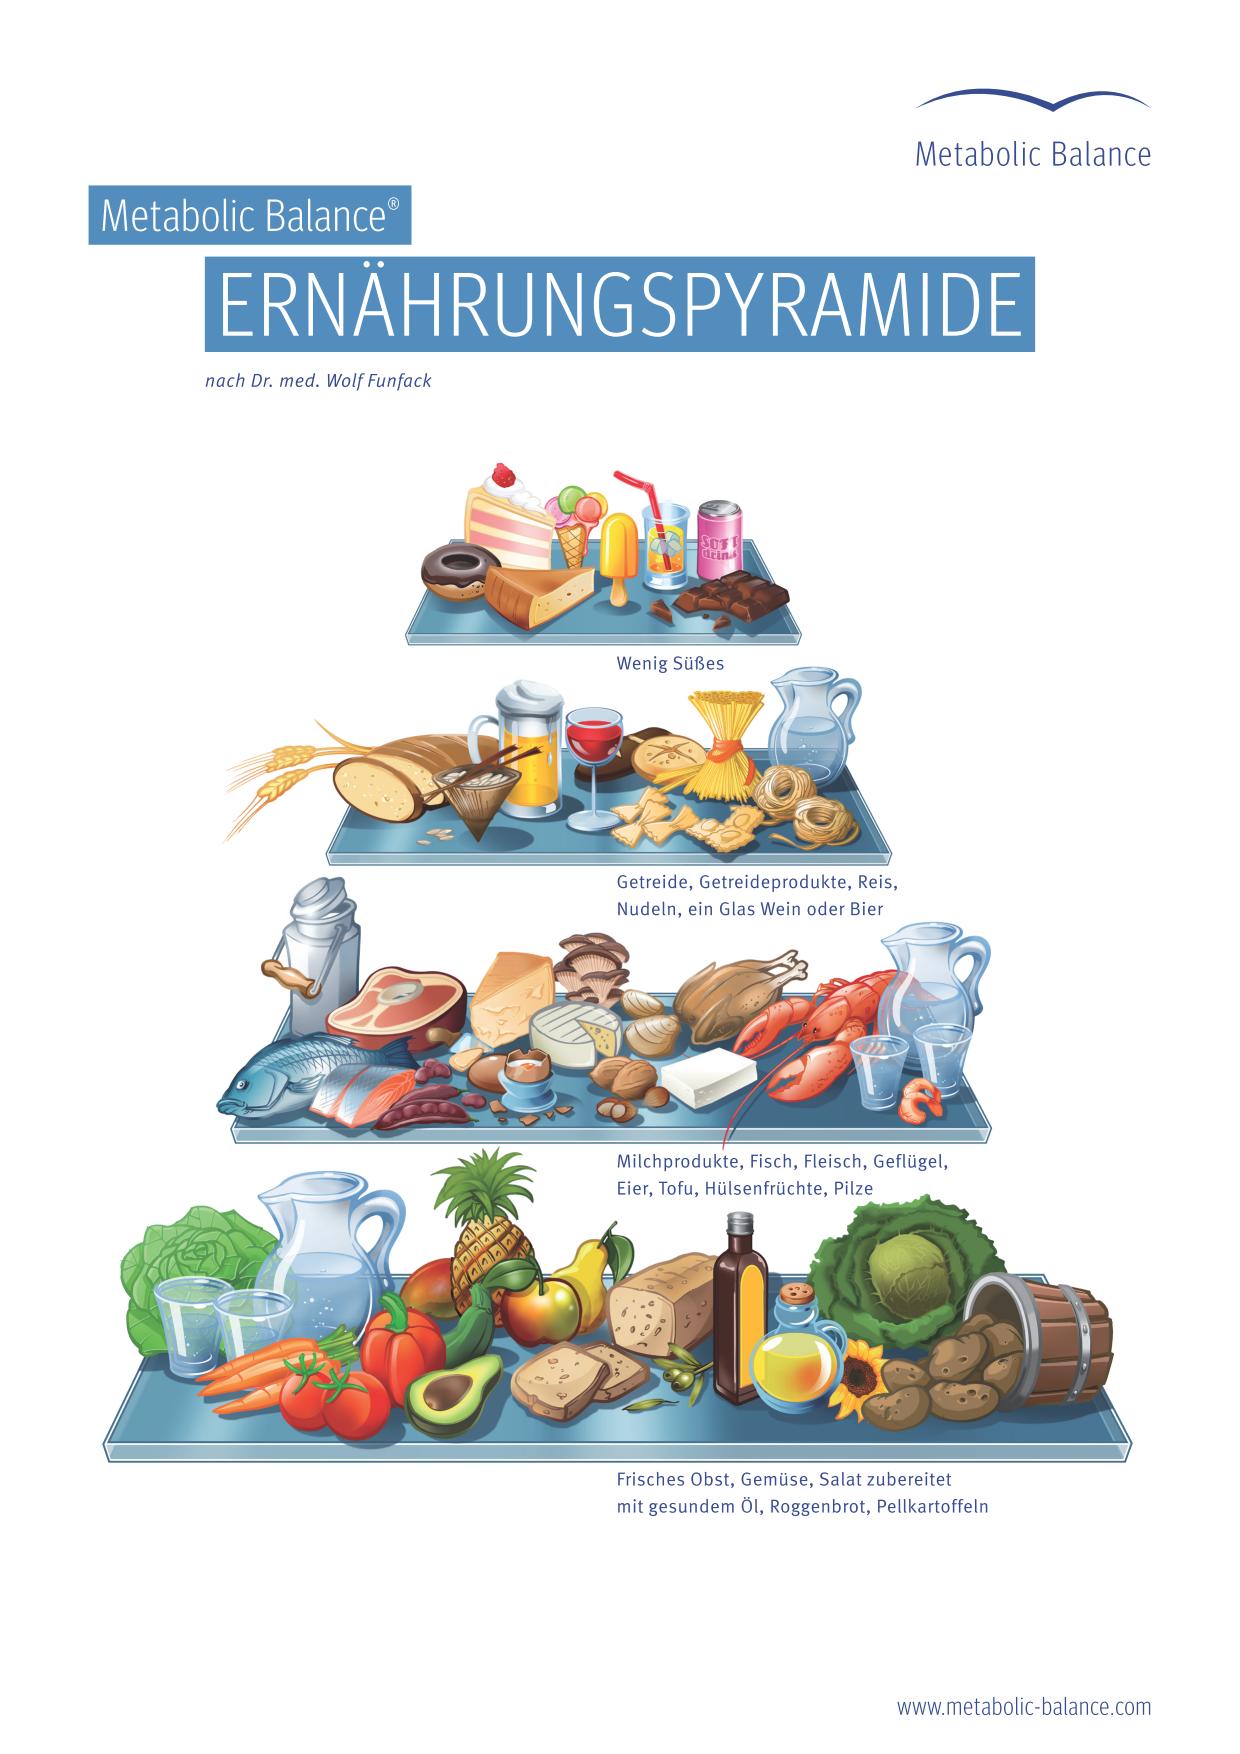 Metabolic Balance Ernährungspyramide